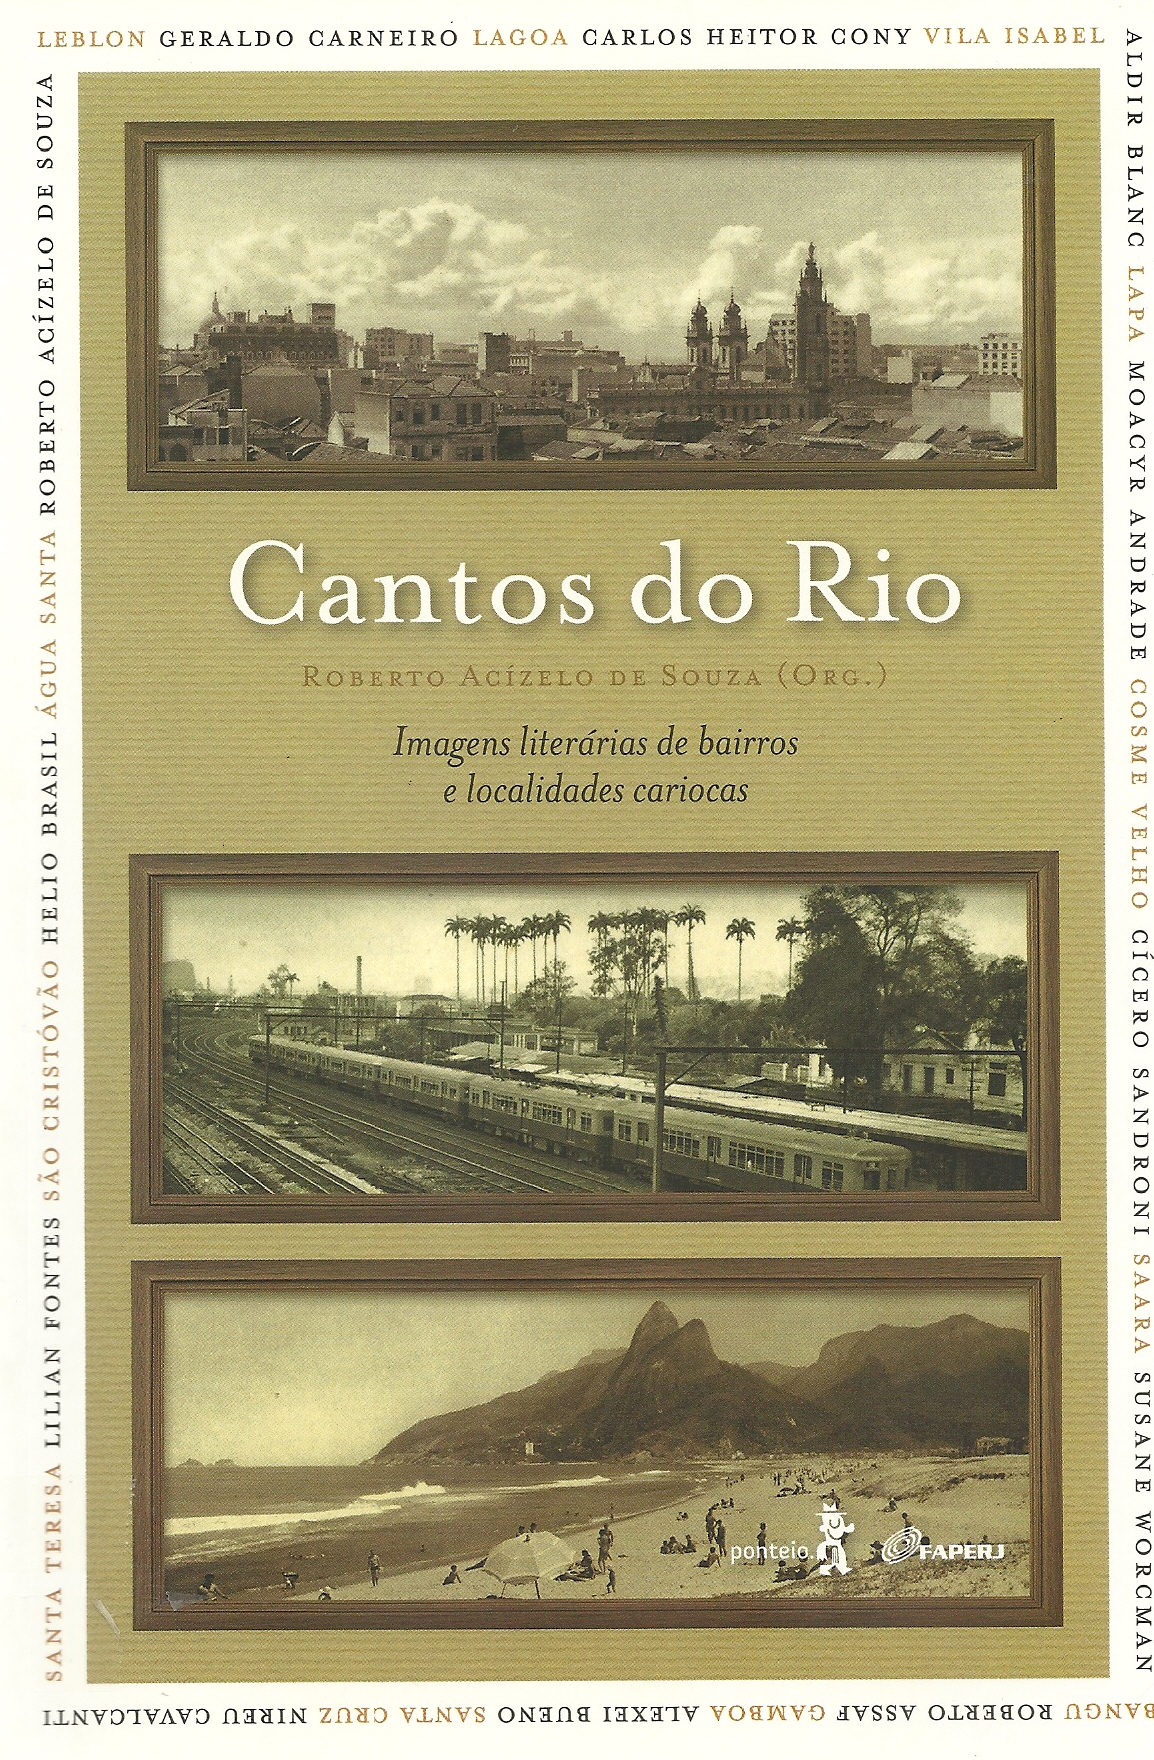 Cantos-do-Rio.jpg